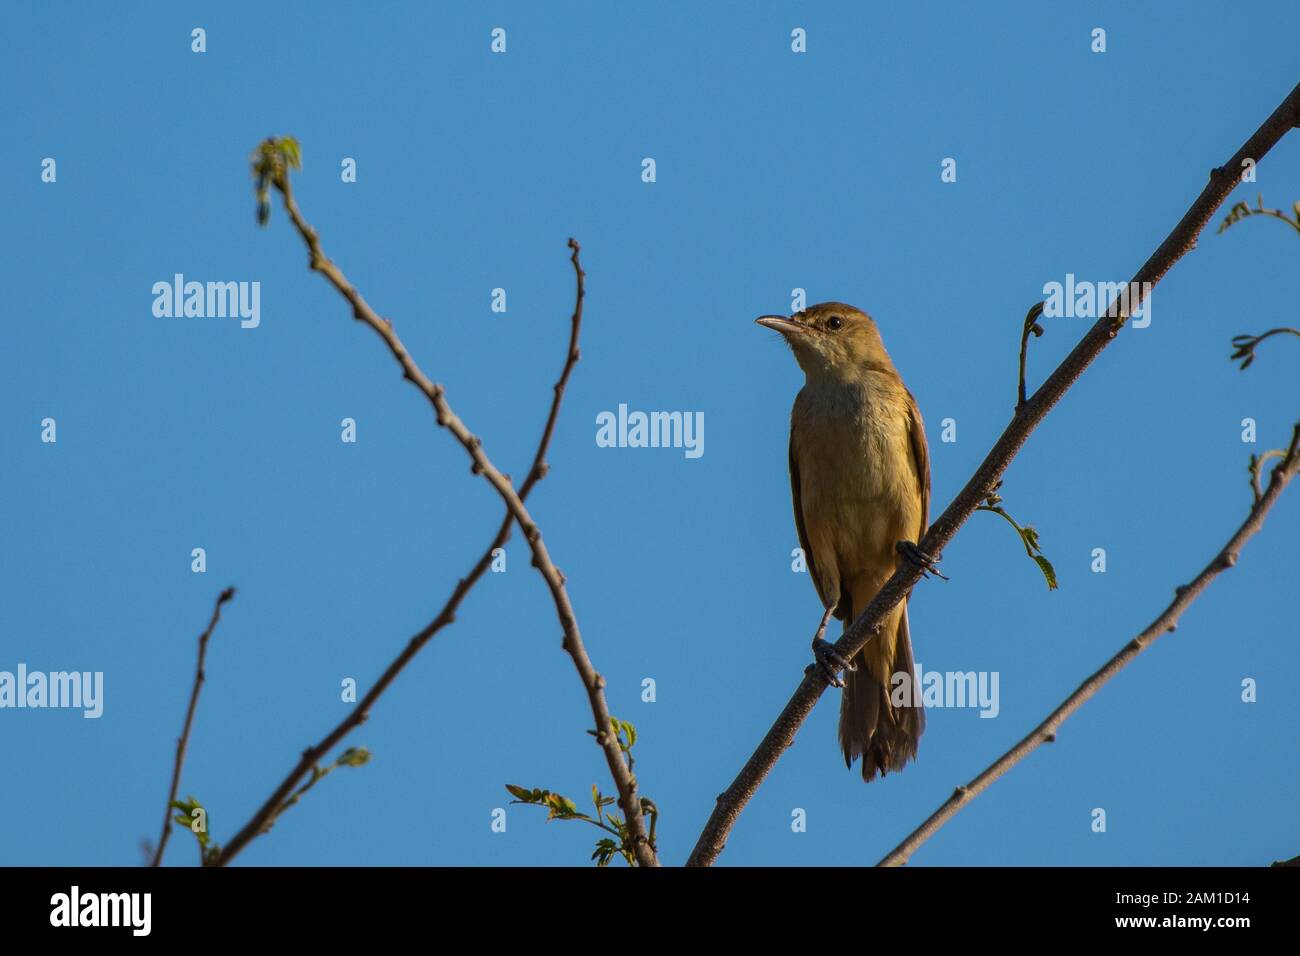 bird on a tree Stock Photo